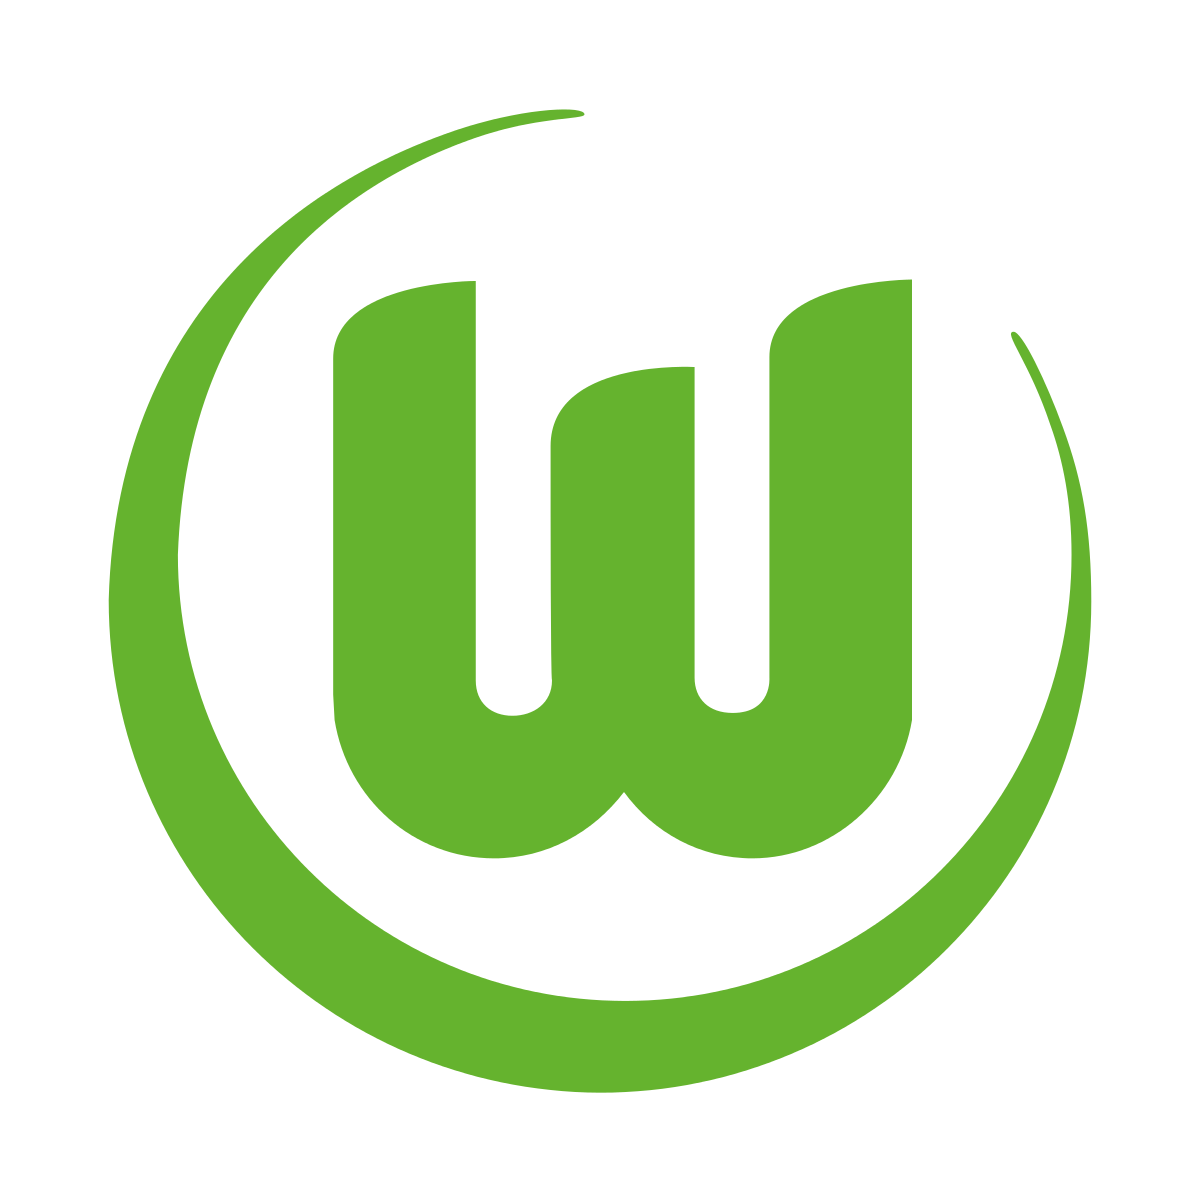 VfL Wolfsburg Brand Logo